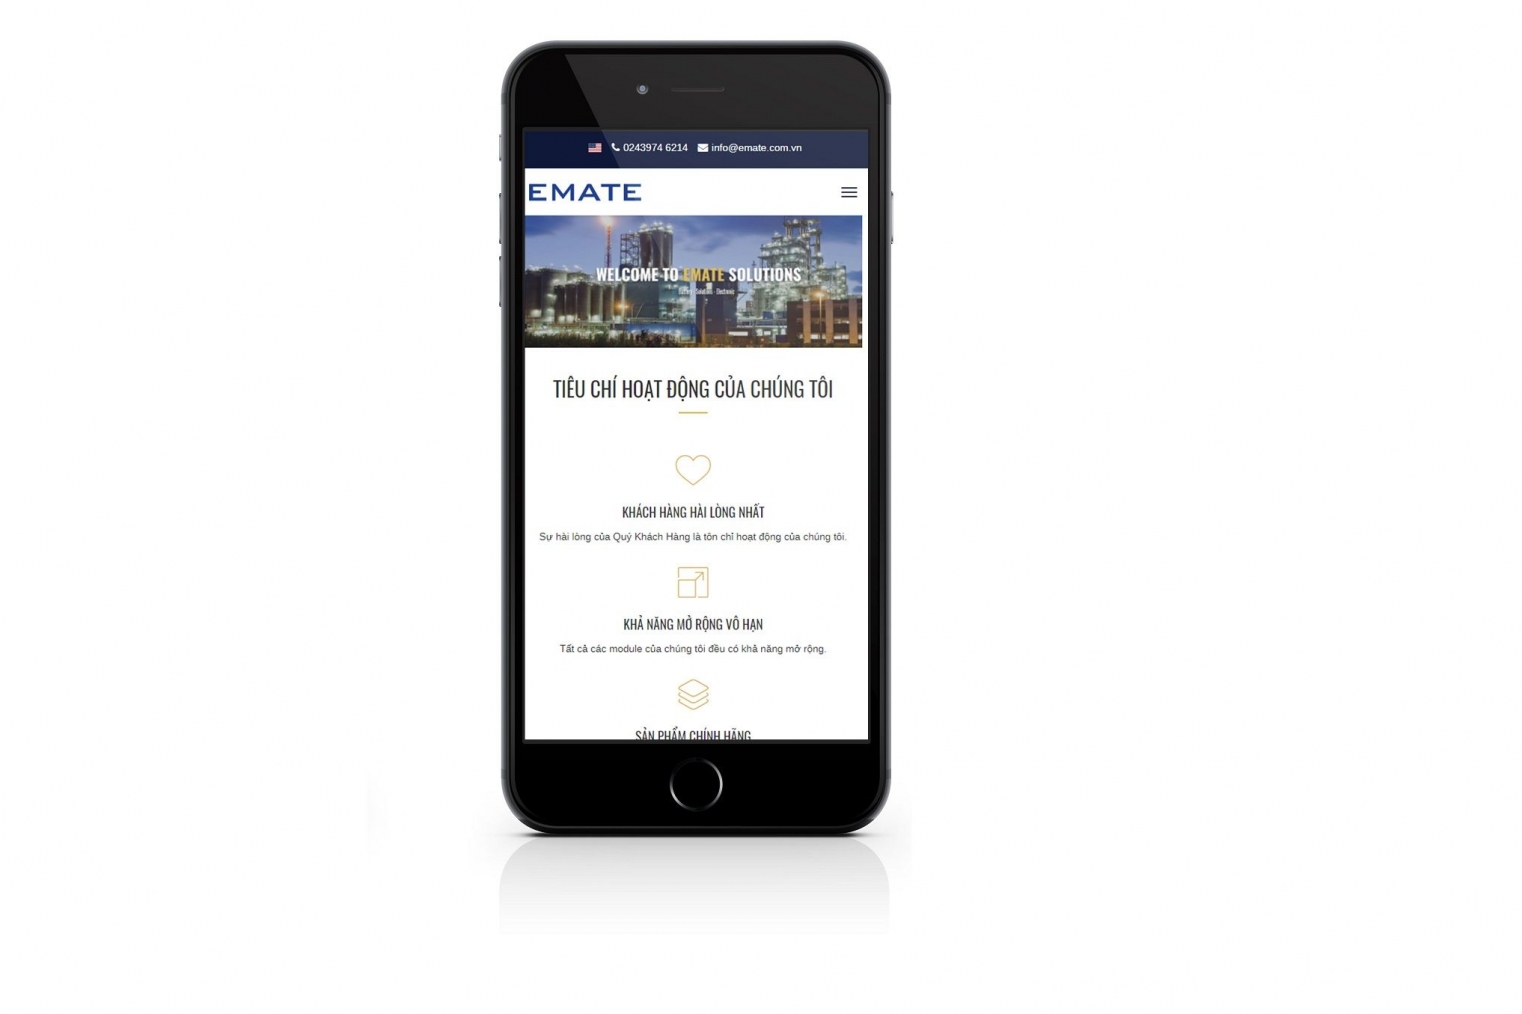 Thiết kế website giới thiệu công ty thiết bị điện Emate